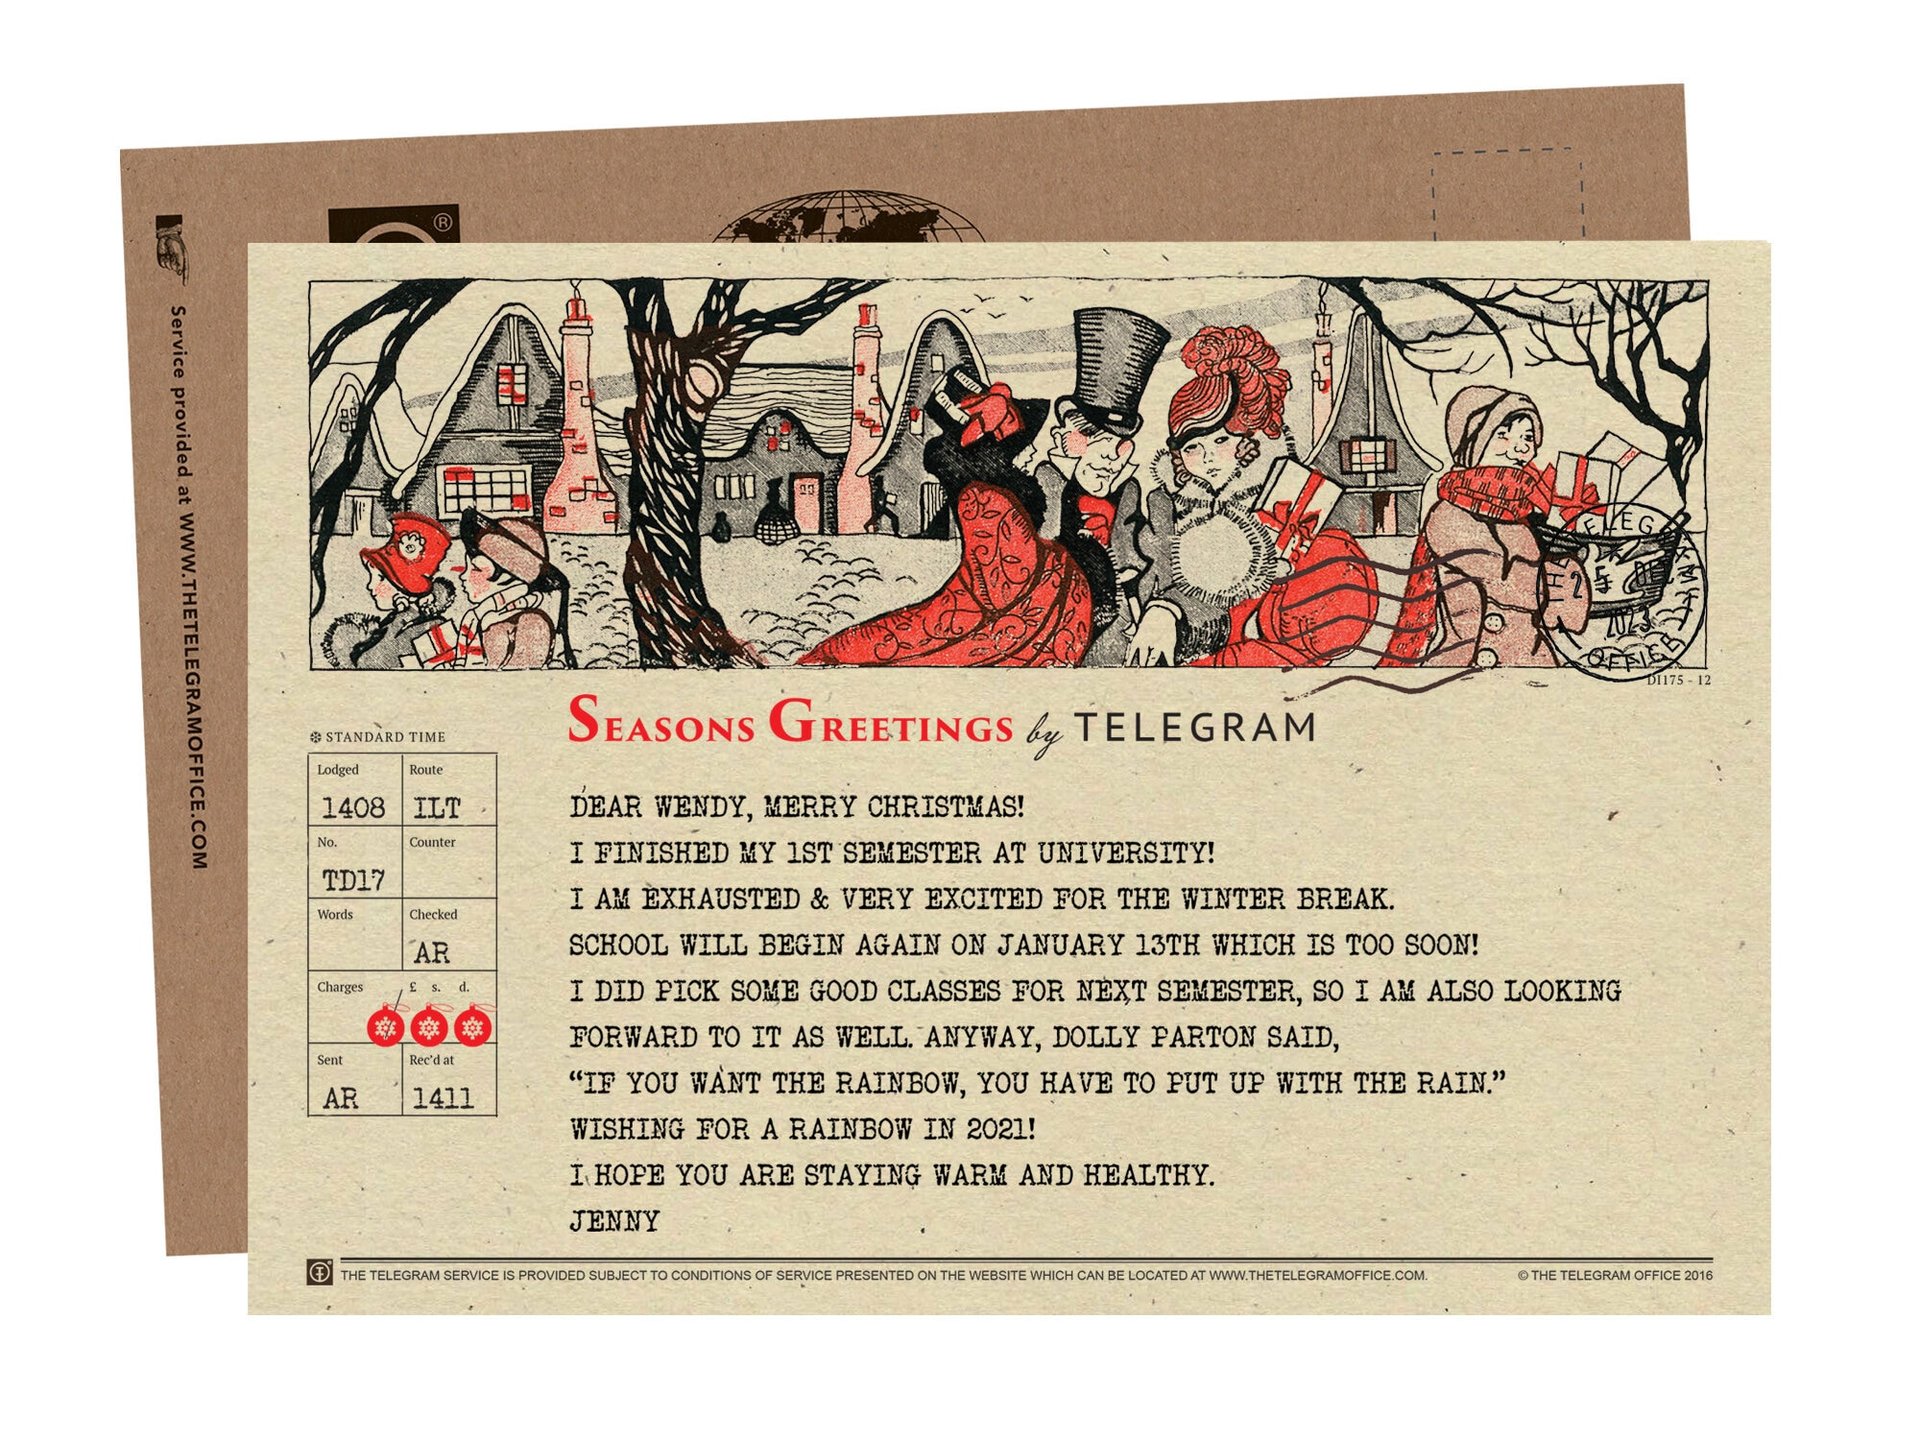 Send Greetings by Telegram - Victorian Christmas